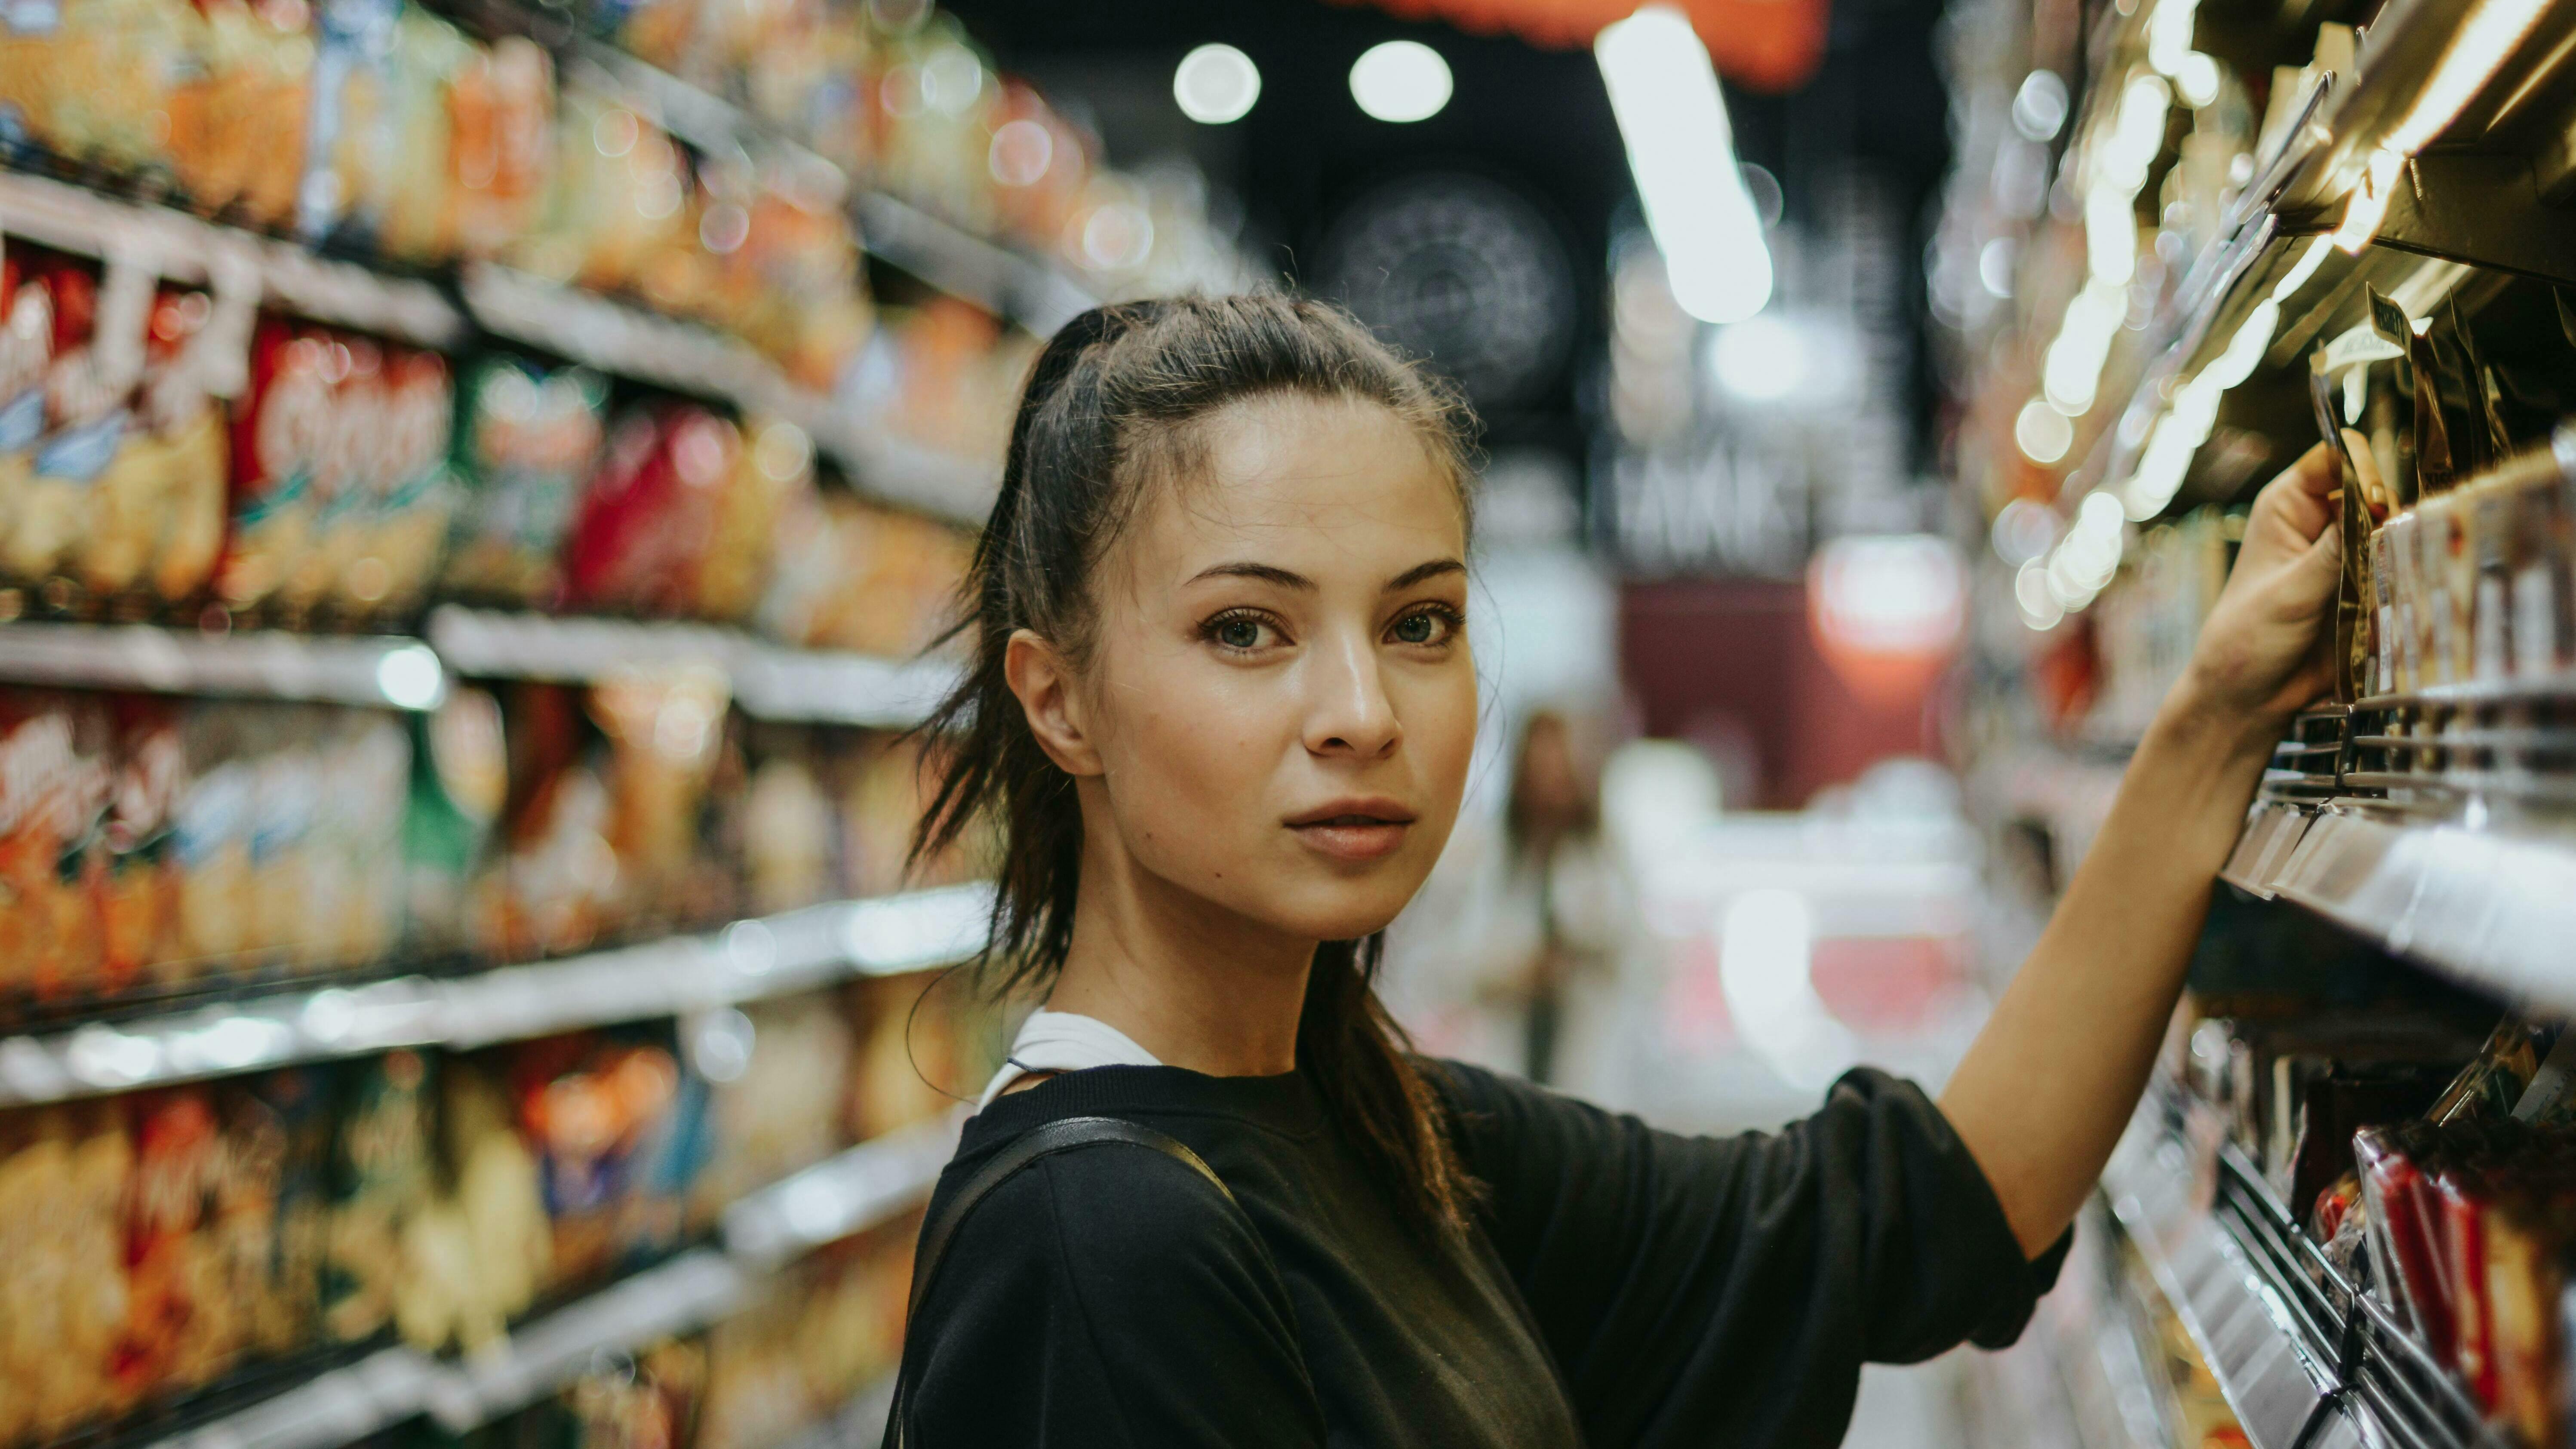 Eine Frau steht in einem Supermarkt und greift etwas aus dem Regal.